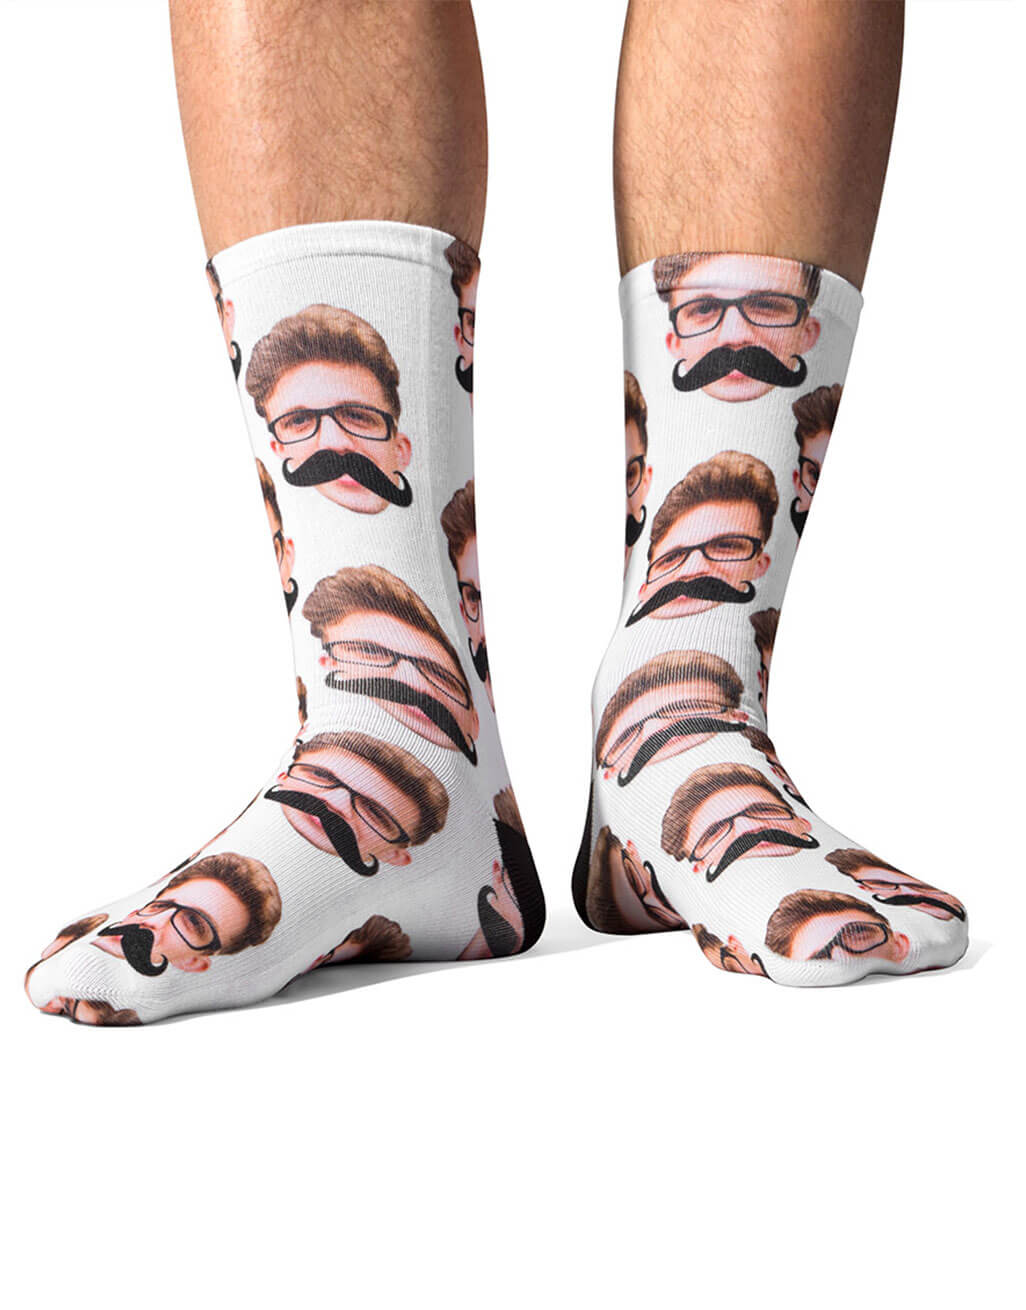 Moustache Me Custom Socks